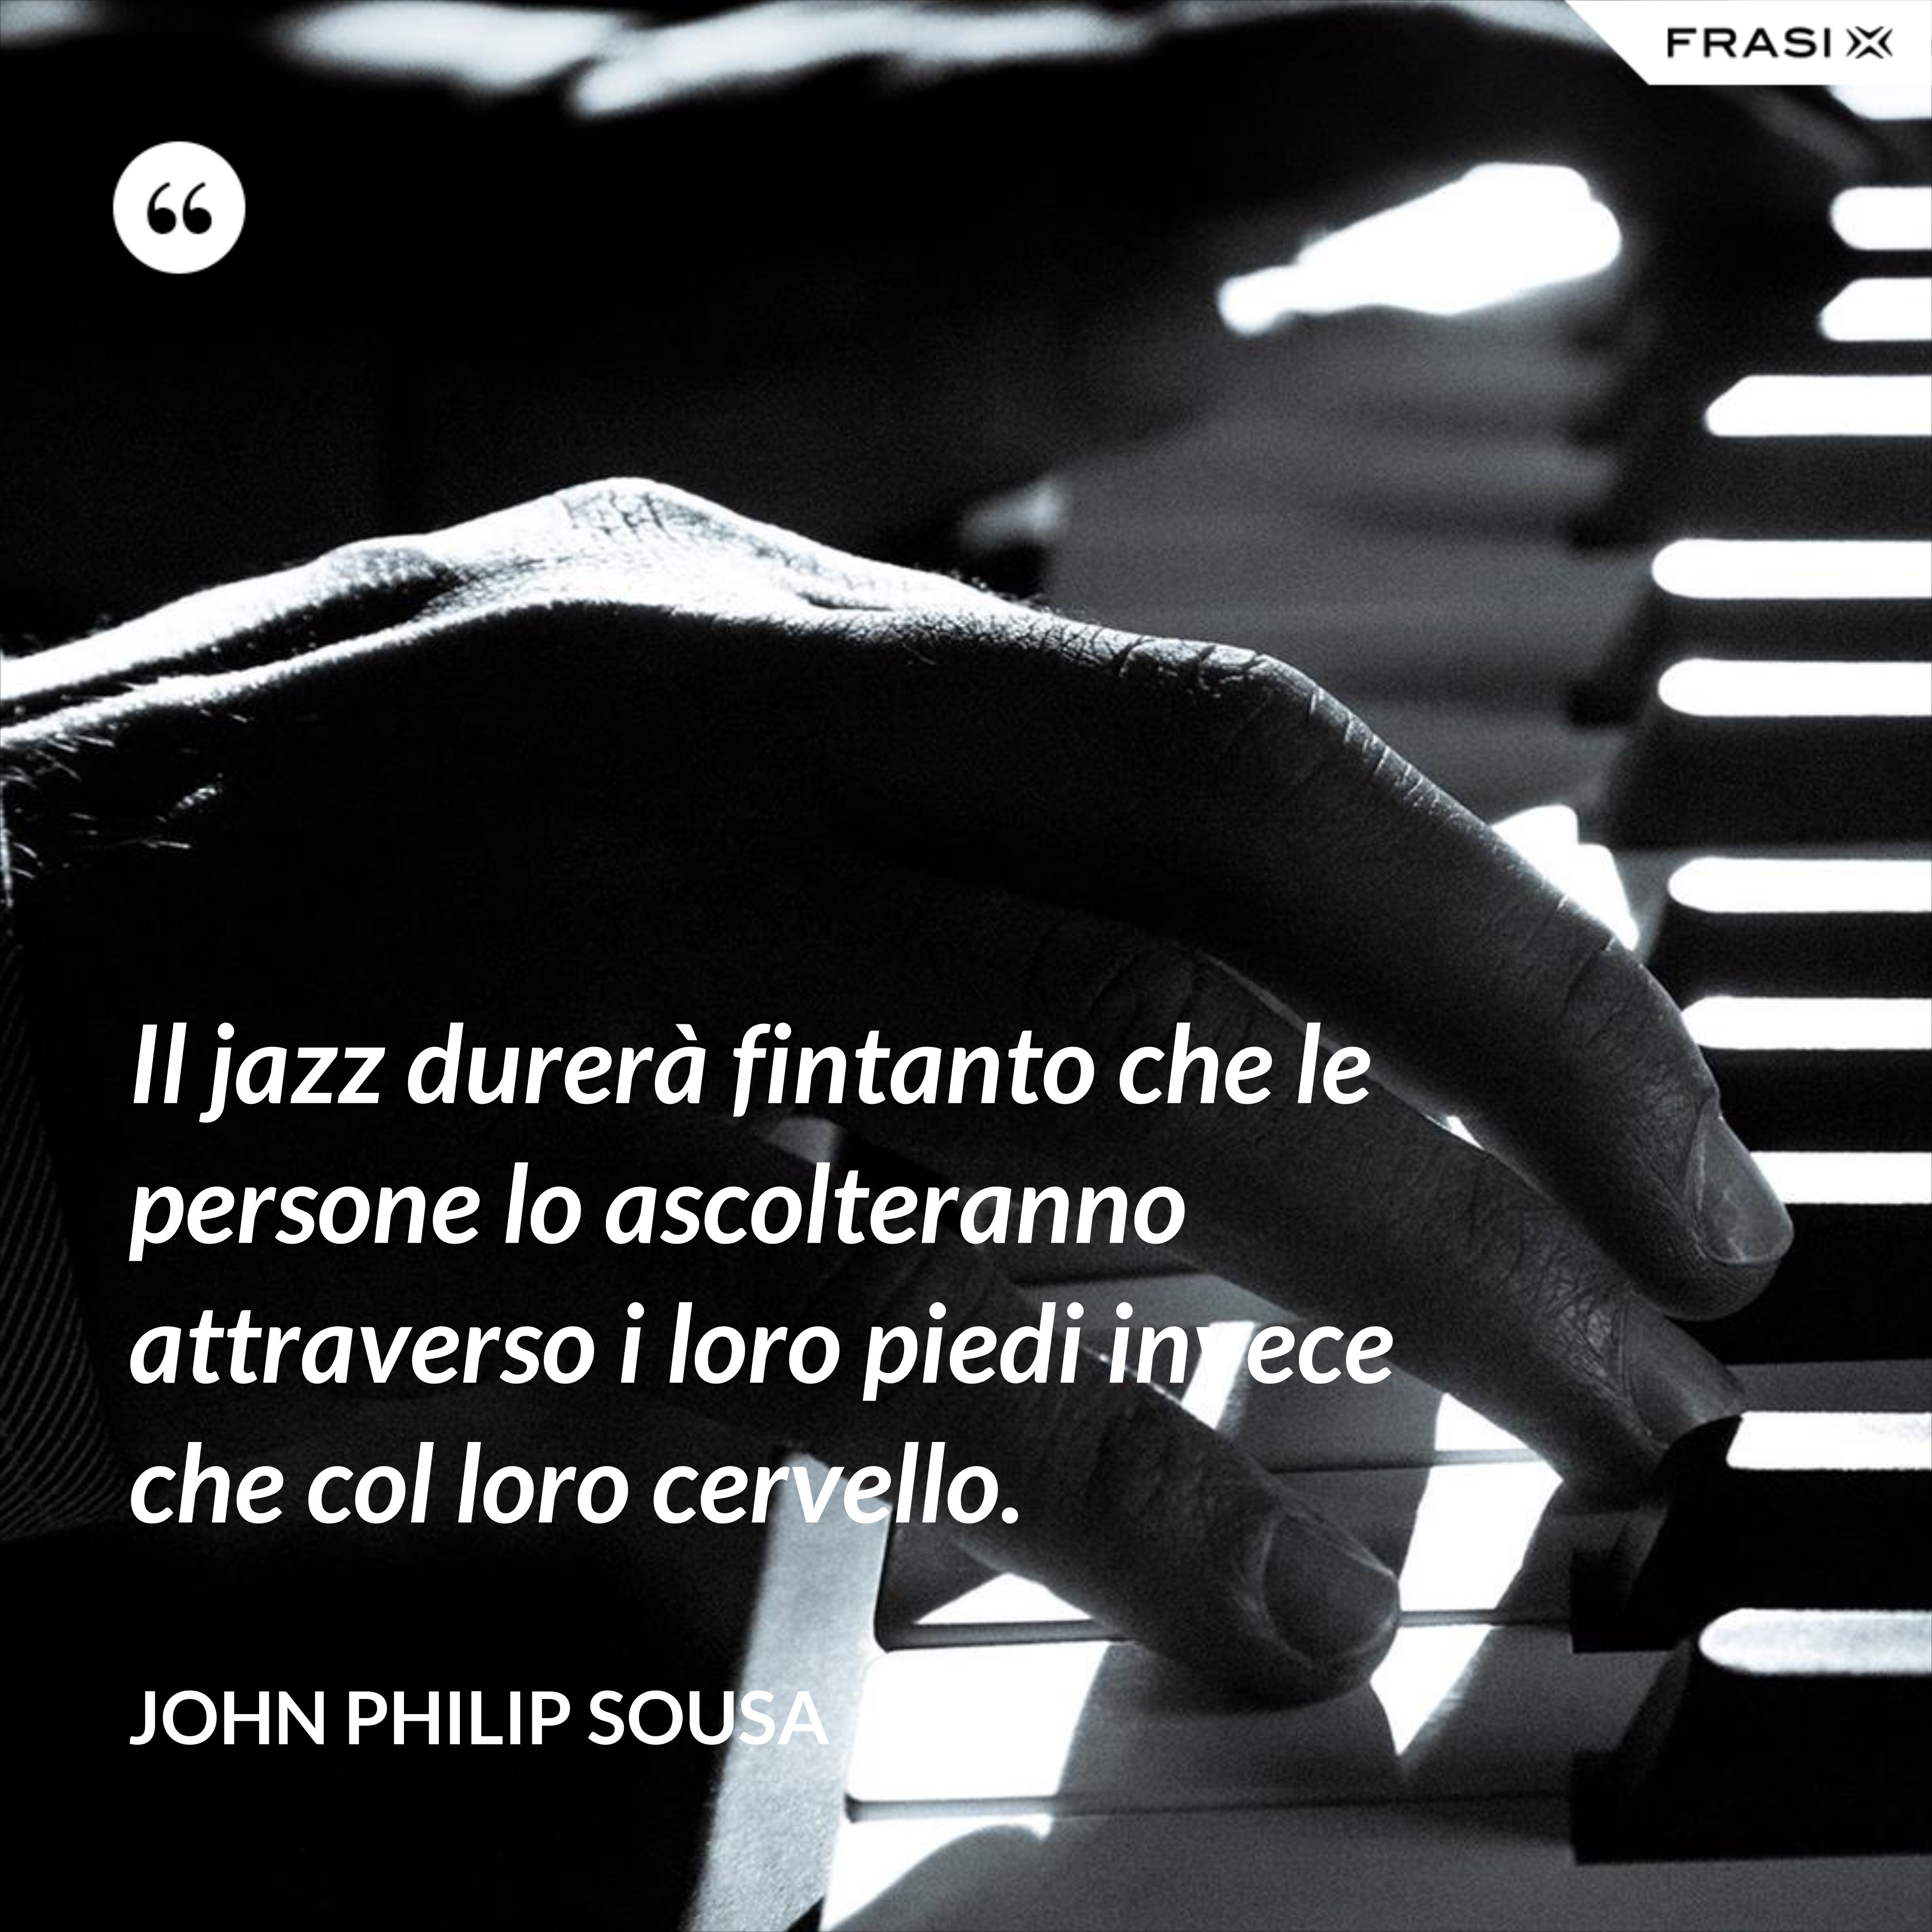 Il jazz durerà fintanto che le persone lo ascolteranno attraverso i loro piedi invece che col loro cervello. - John Philip Sousa